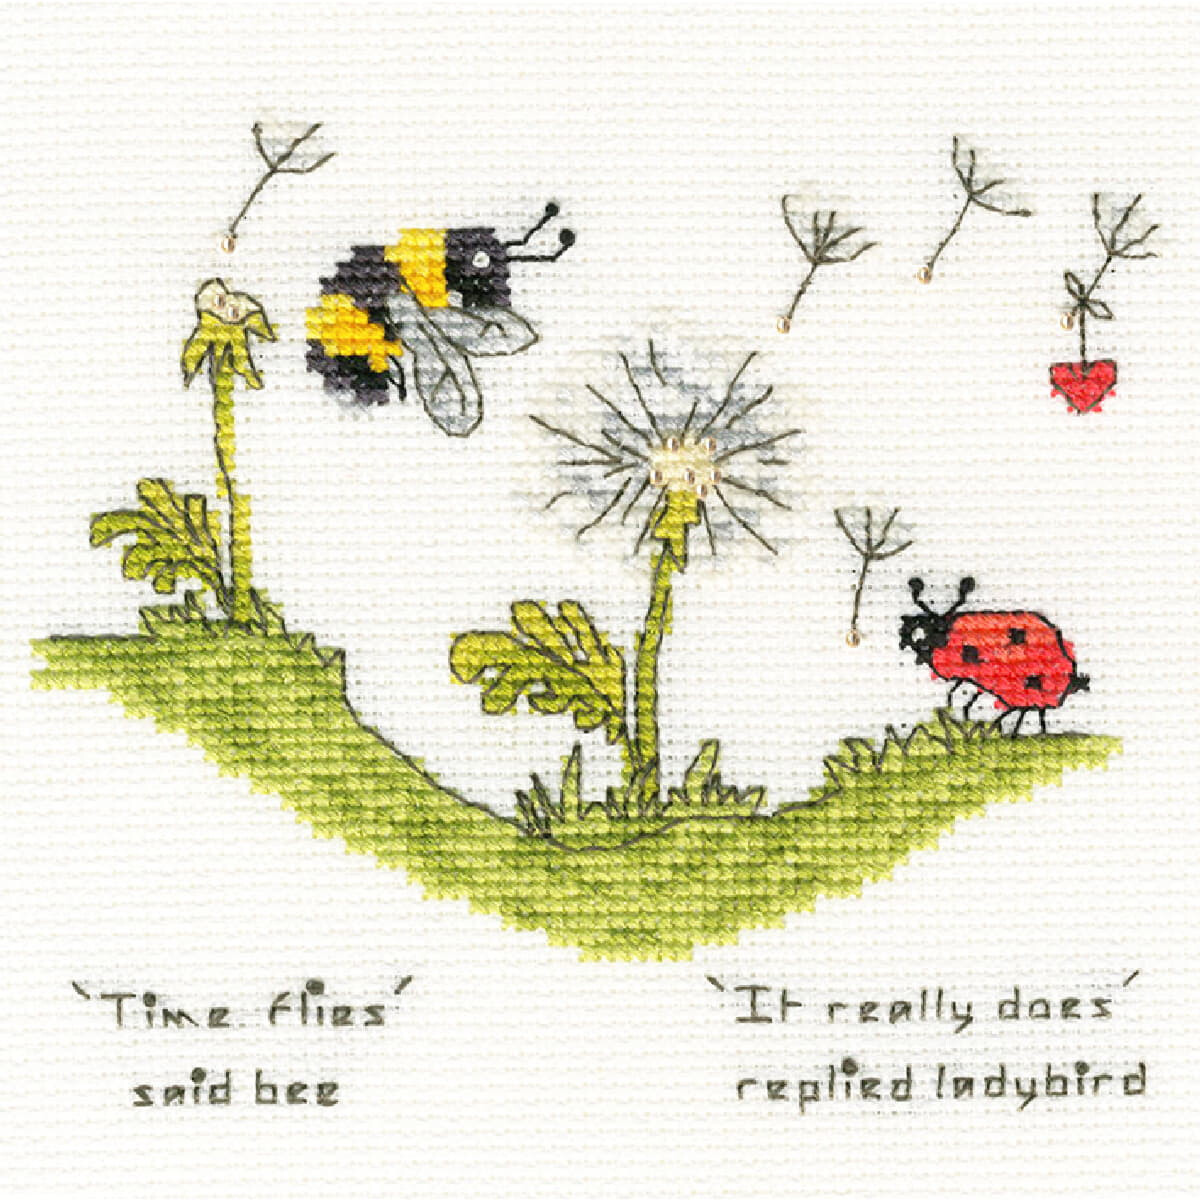 Imagen bordada de una abeja y una mariquita en una colina...